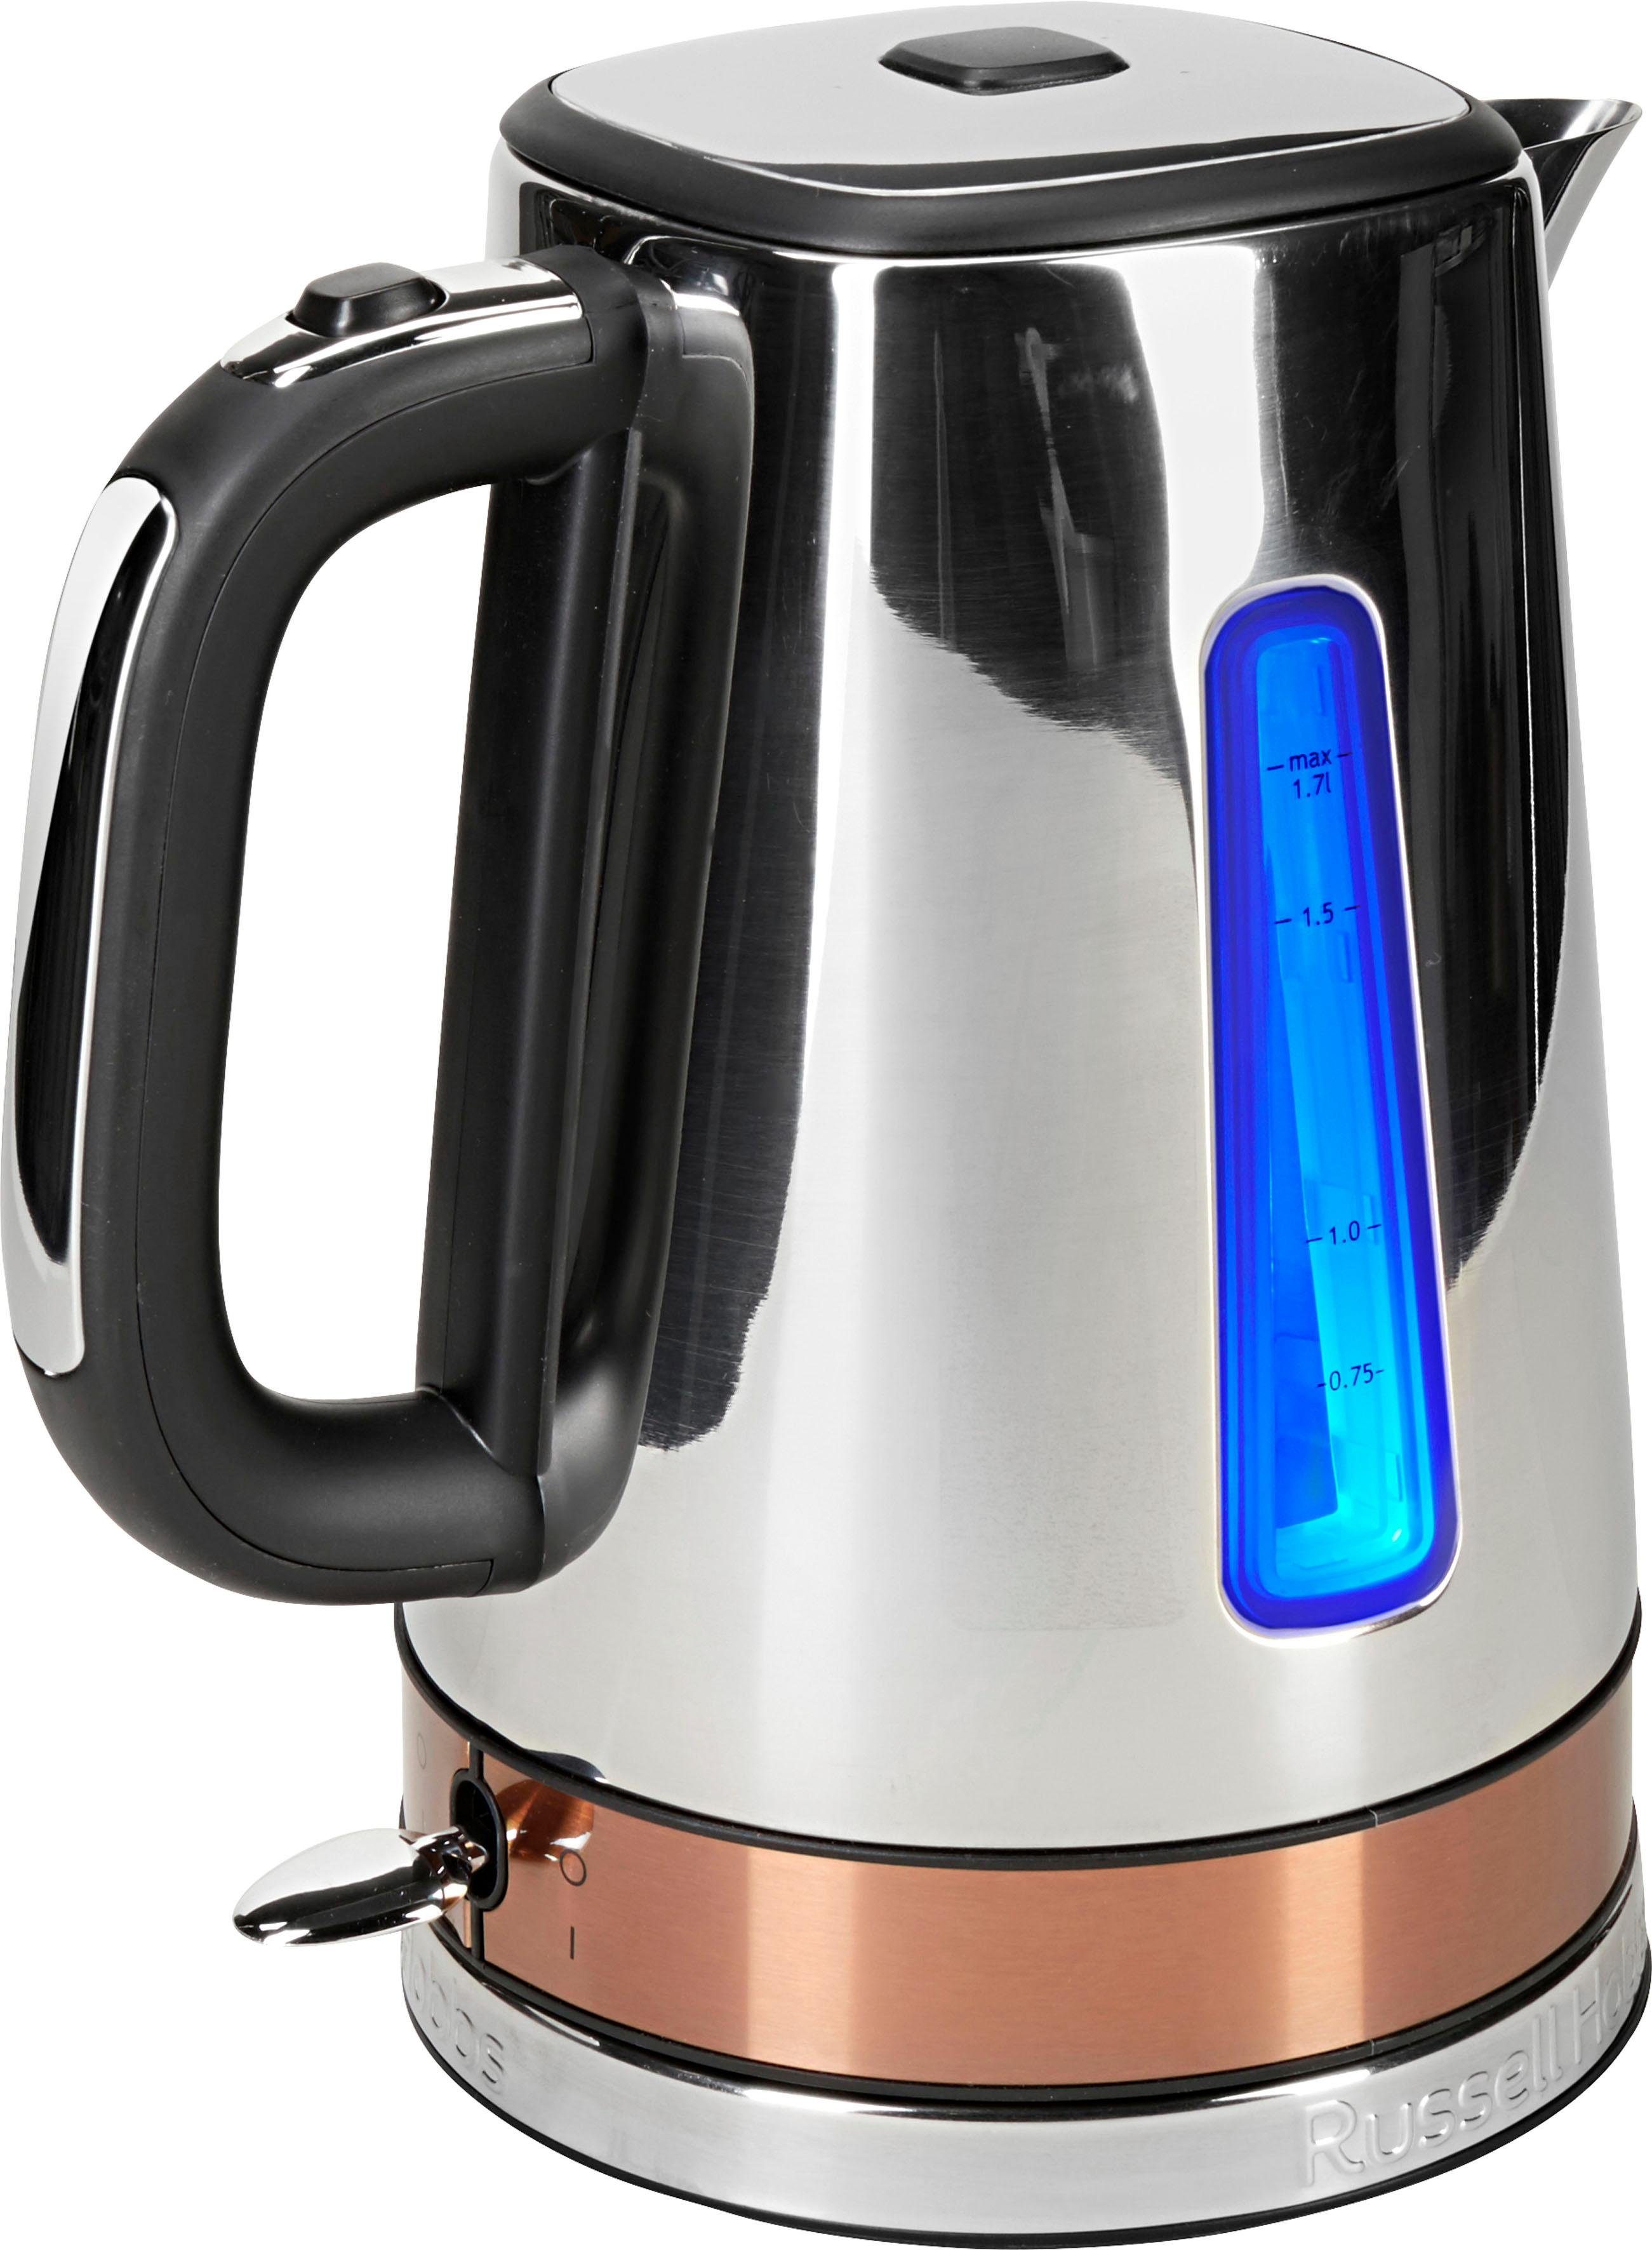 RUSSELL HOBBS Wasserkocher Luna Copper Accents 24280-70, 1,7 l, 2400 W,  Trockengeh-, Überhitzungsschutz, Kochstoppautomatik und Abschaltmöglichkeit